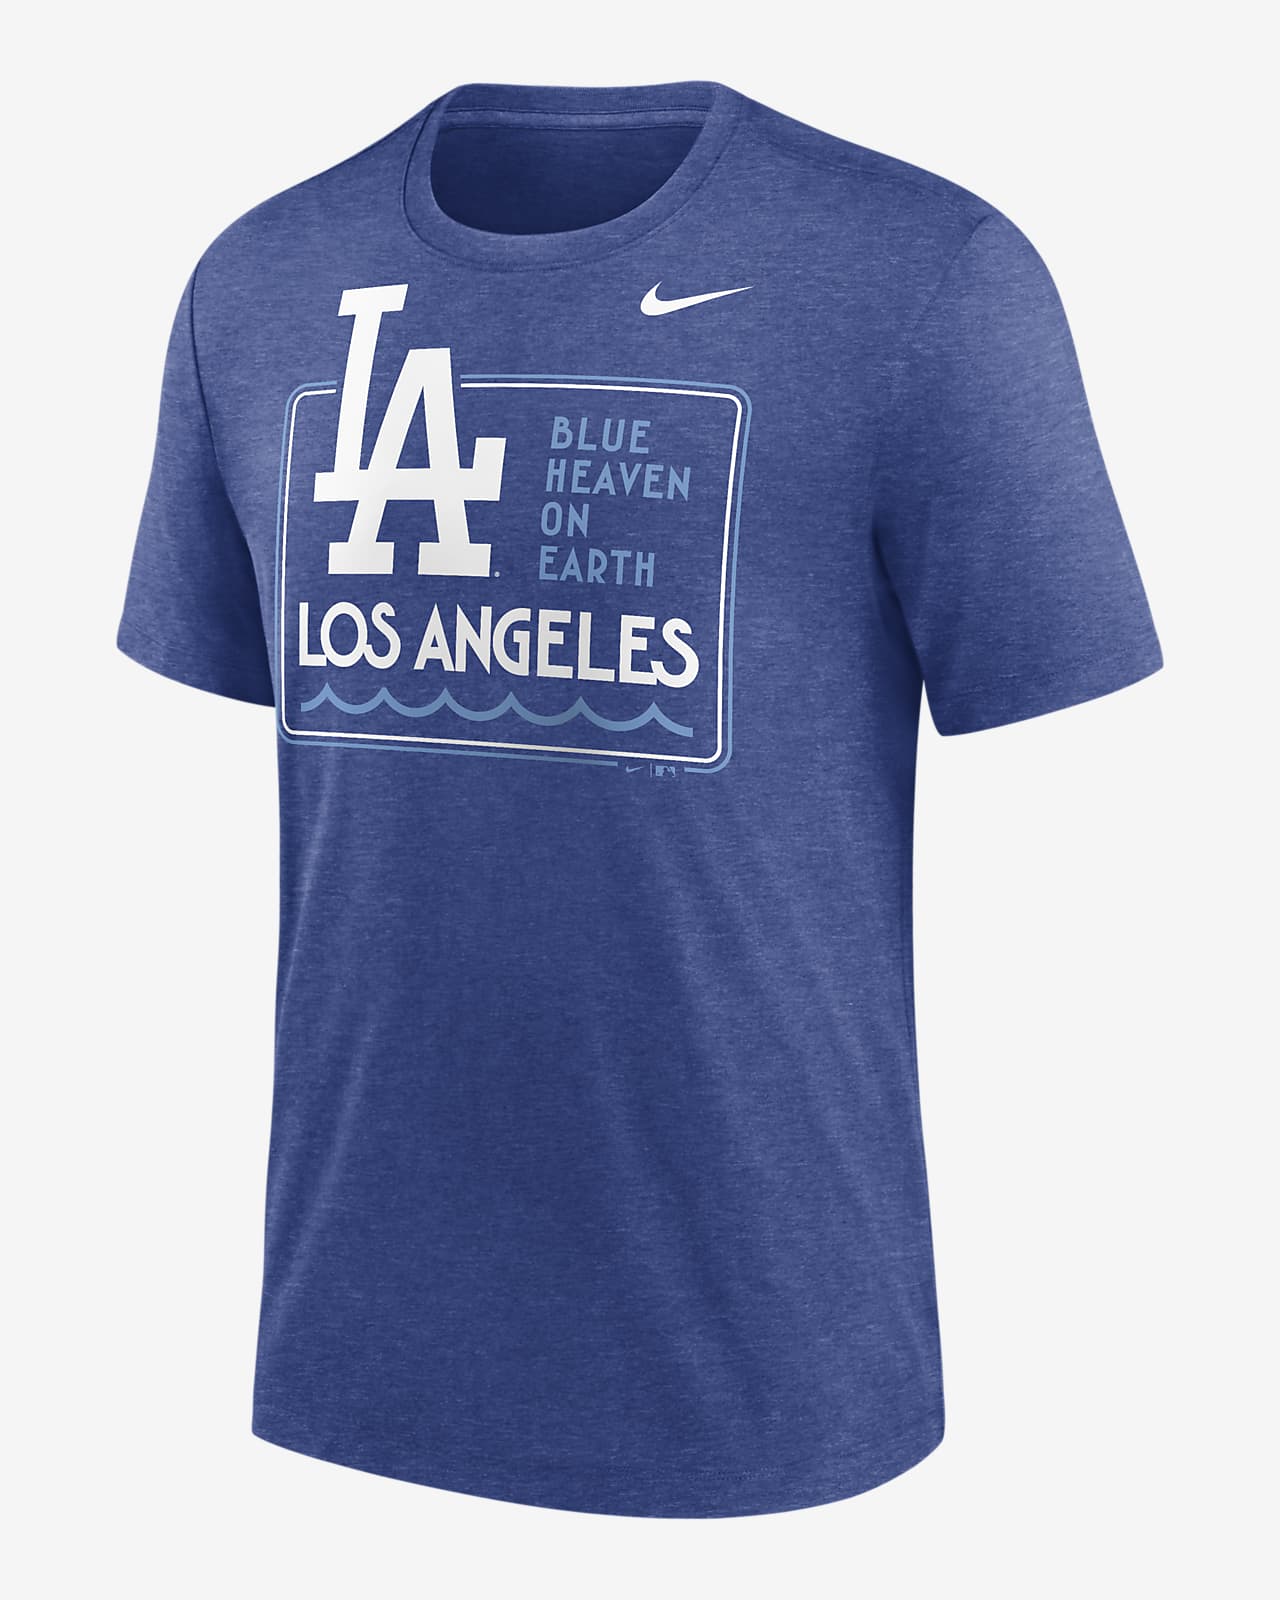 Playera Nike de la MLB para hombre Los Angeles Dodgers Hometown